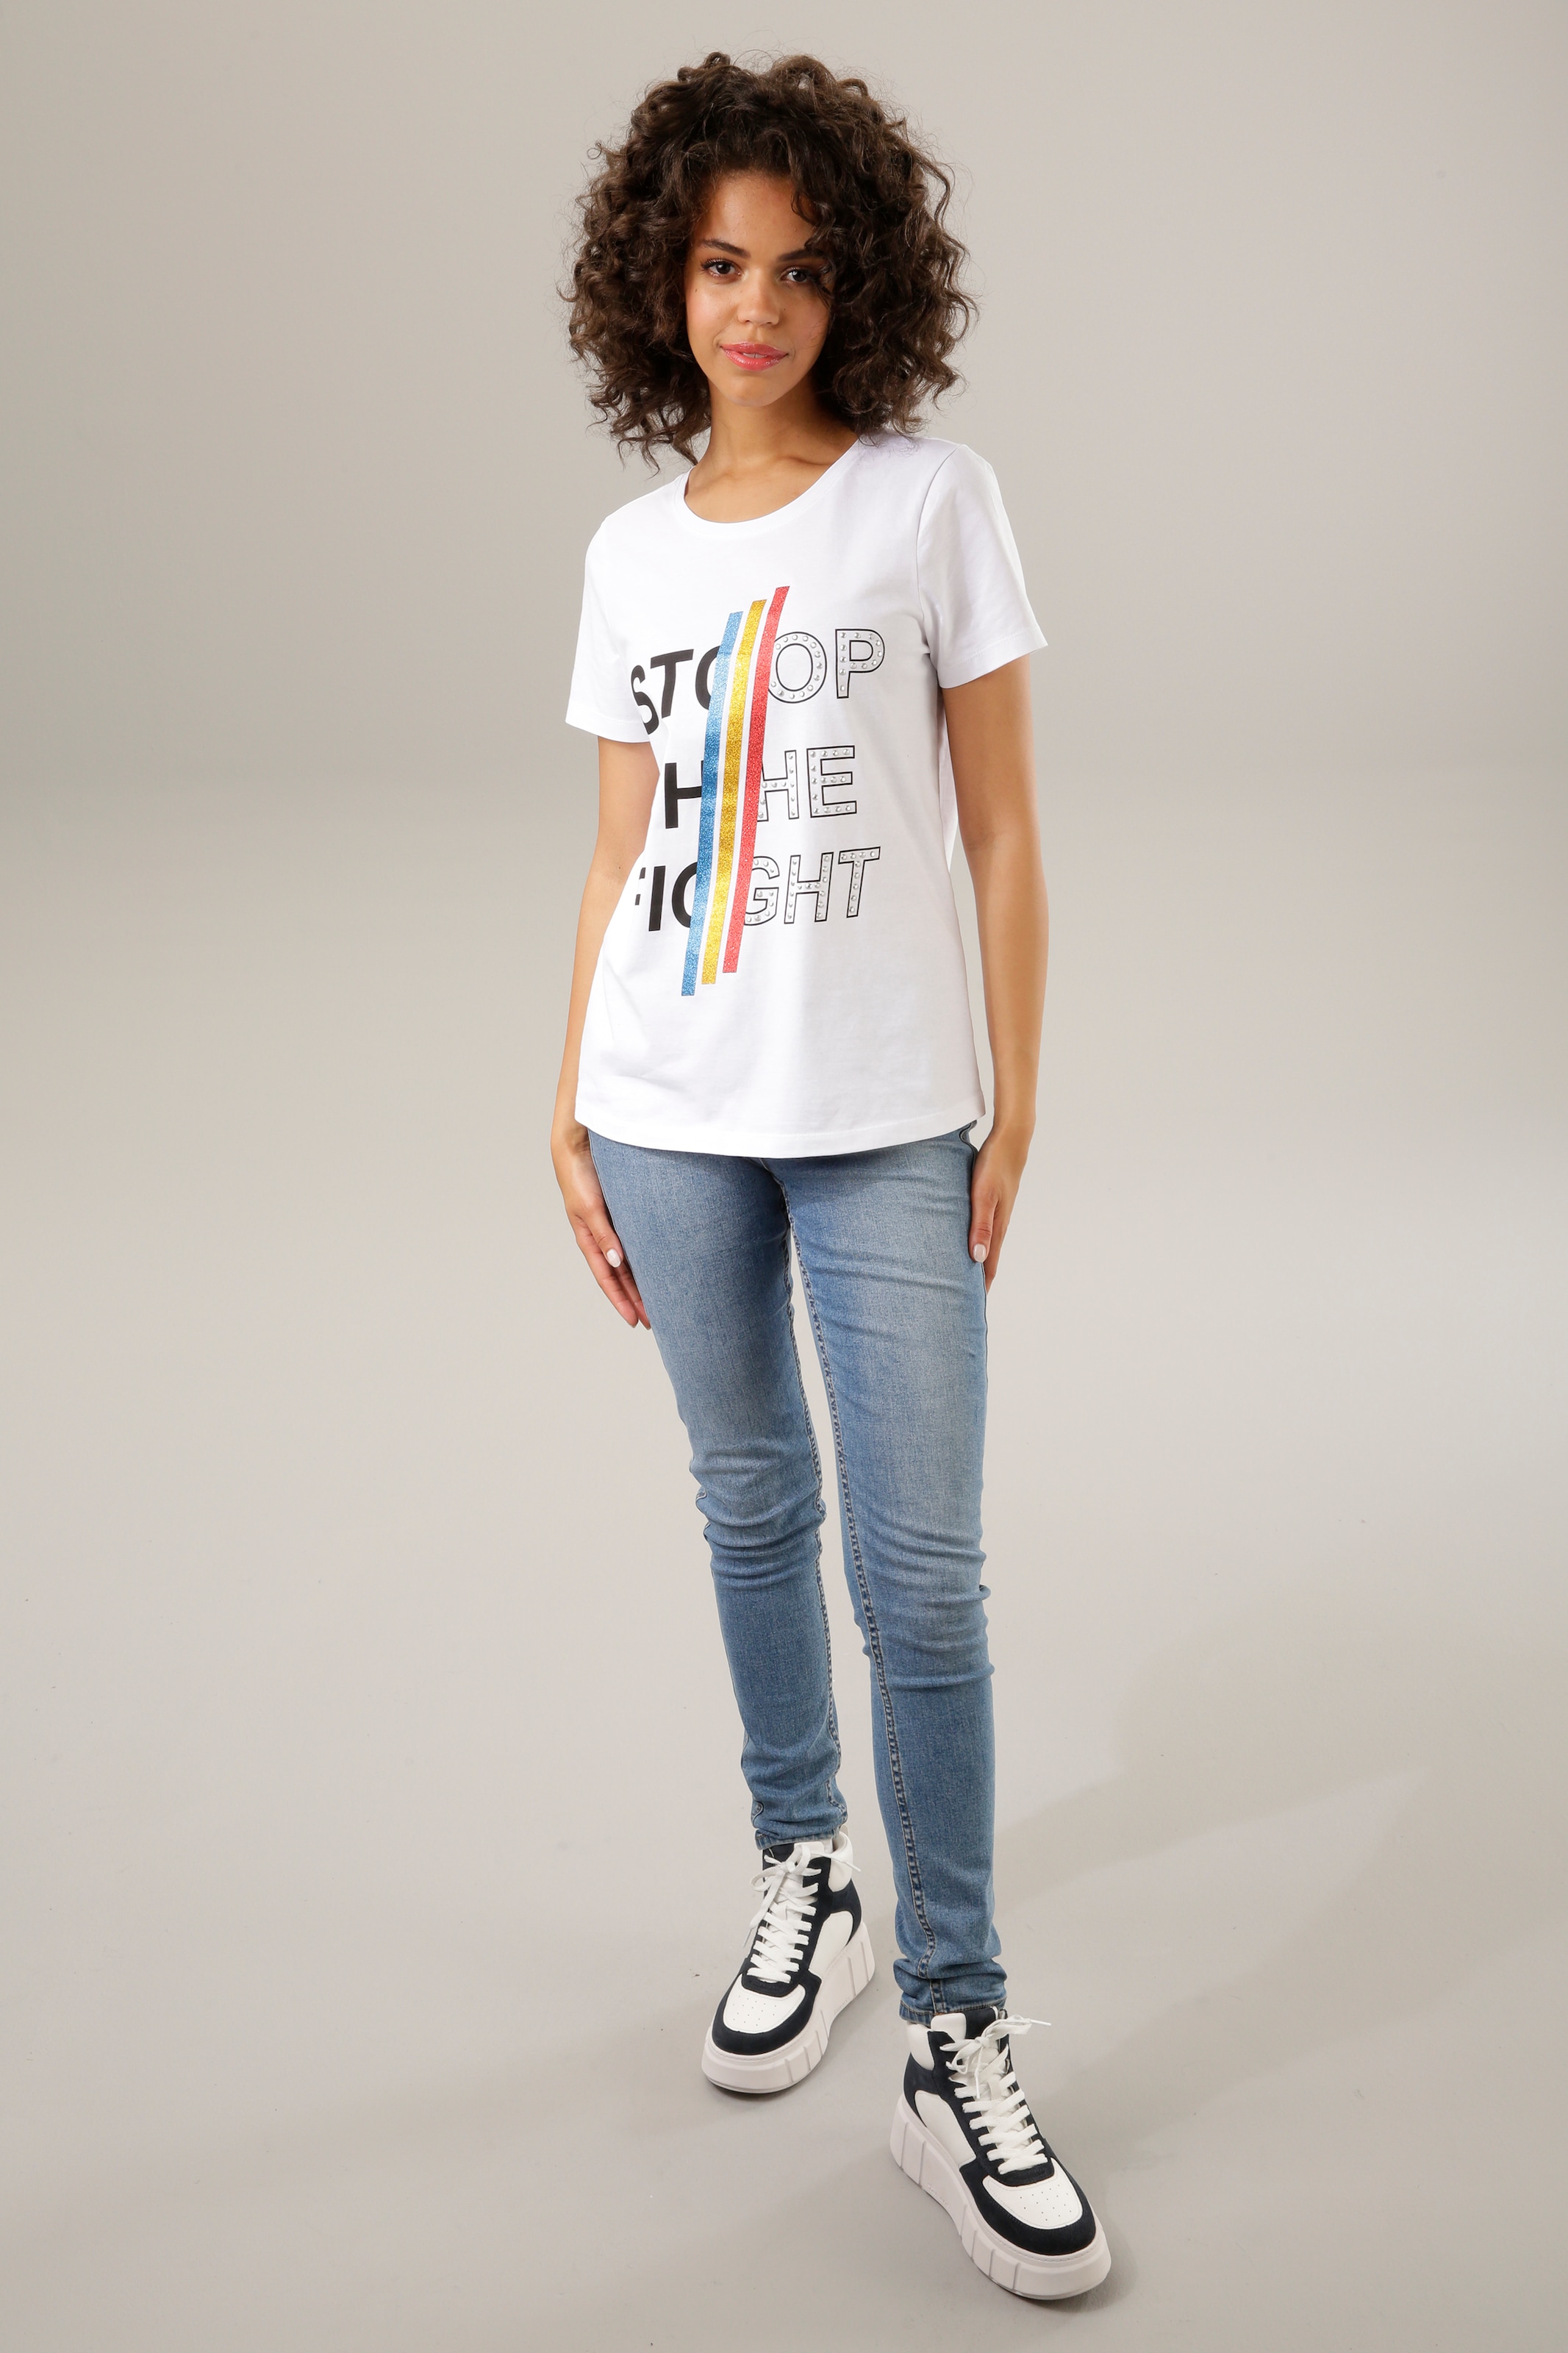 und CASUAL bunten Aniston Print-Shirt, mit Nieten Schriftzug shoppen Glitzerstreifen,